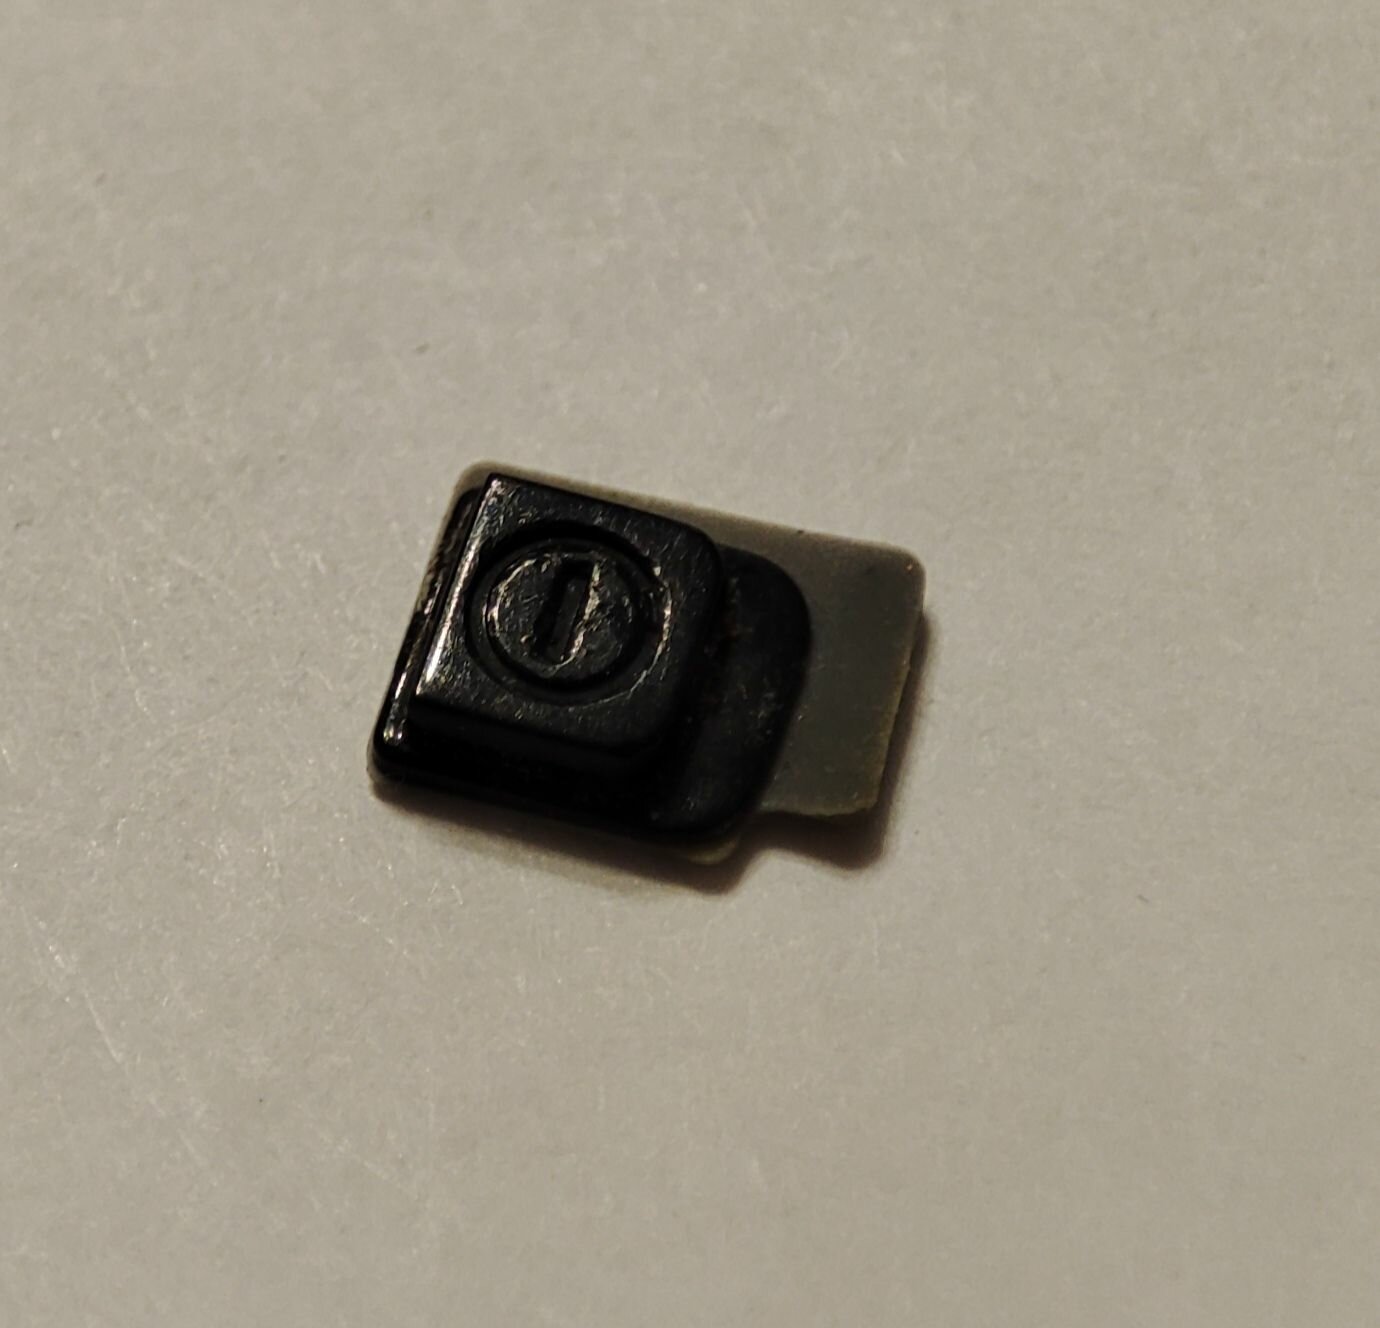 Комплект боковых кнопок. Толкатель кнопки включения для телефона Sony Ericsson w950i (кнопка включения часть корпуса)